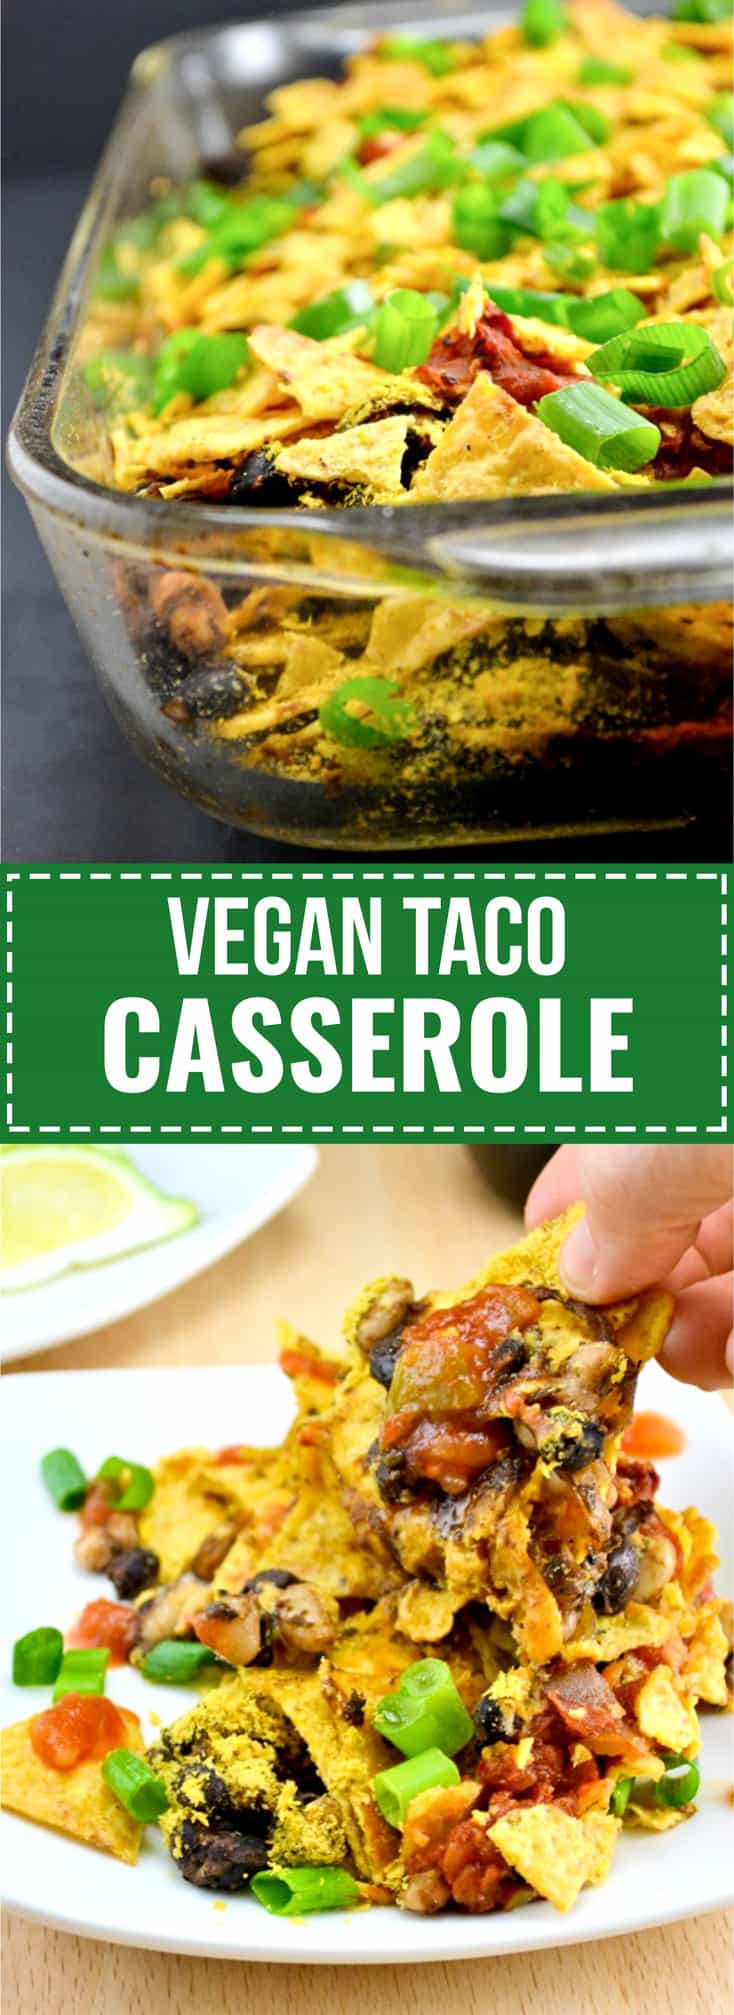 vegan taco casserole recipe